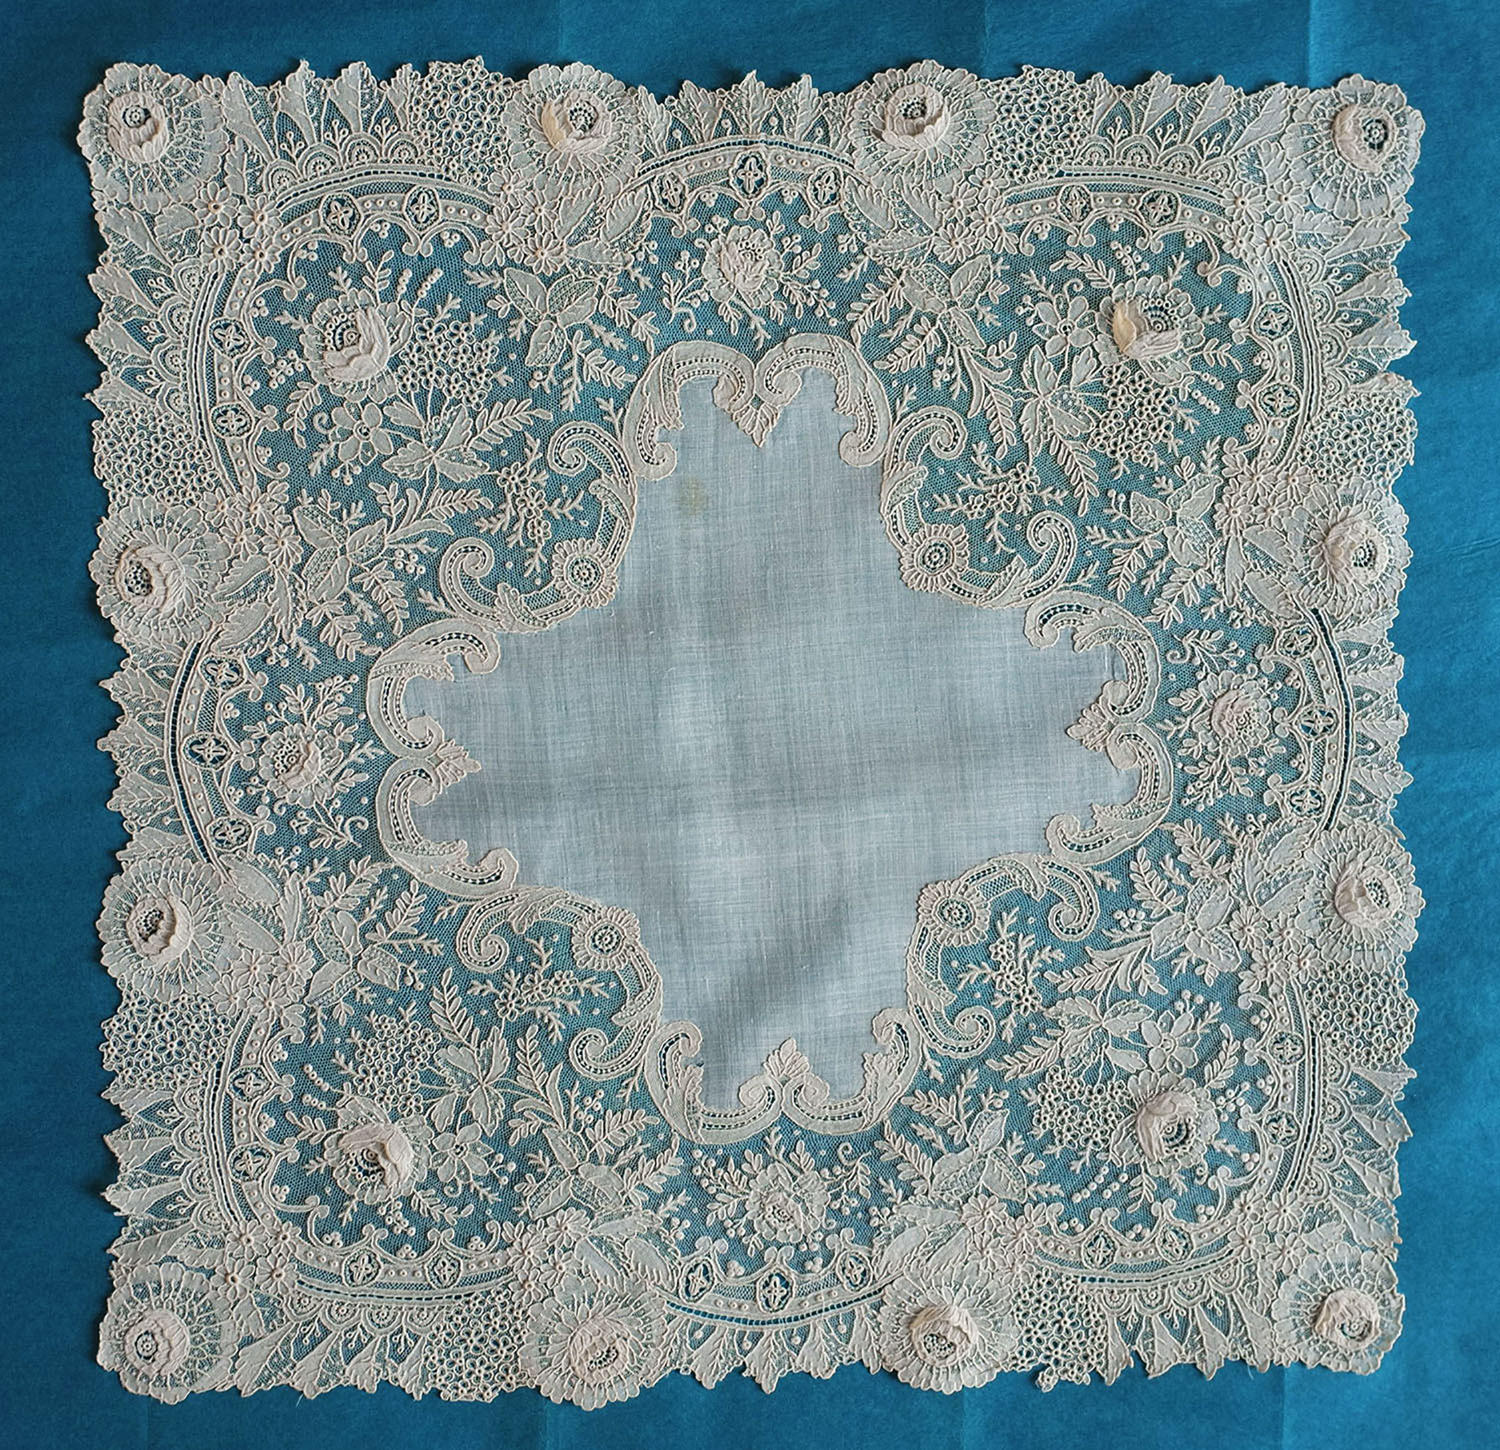 19th Century Brussels Point de Gaze Lace Handkerchief